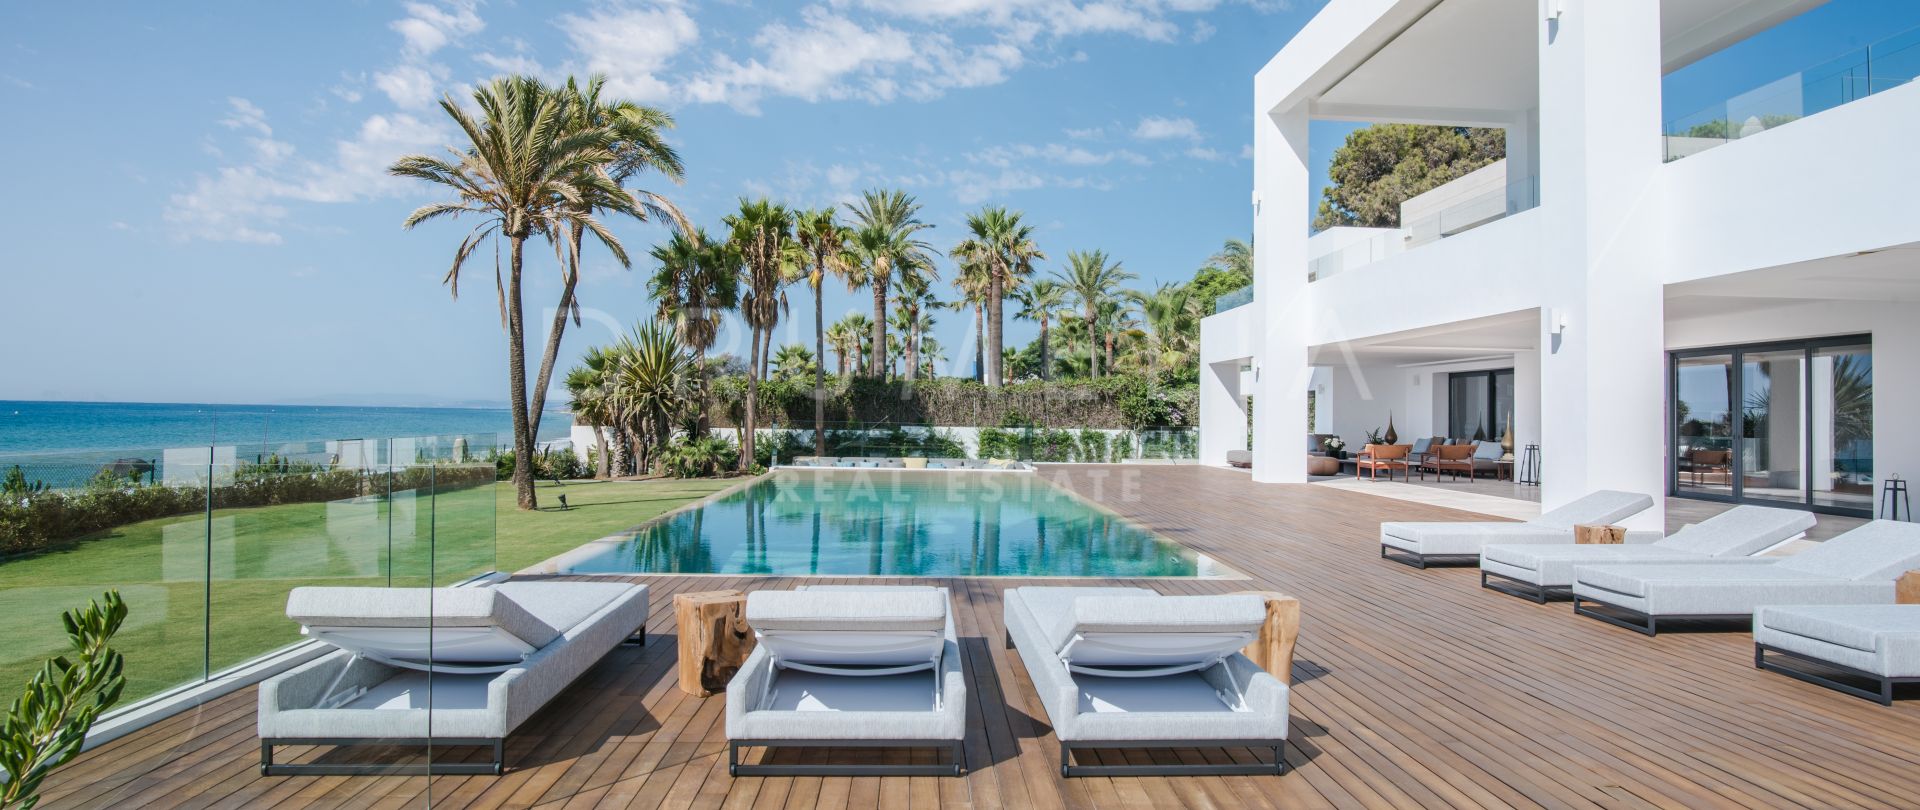 La Perla Blanca - Wahrhaft atemberaubende moderne Villa am Meer, El Paraiso Barronal, Estepona